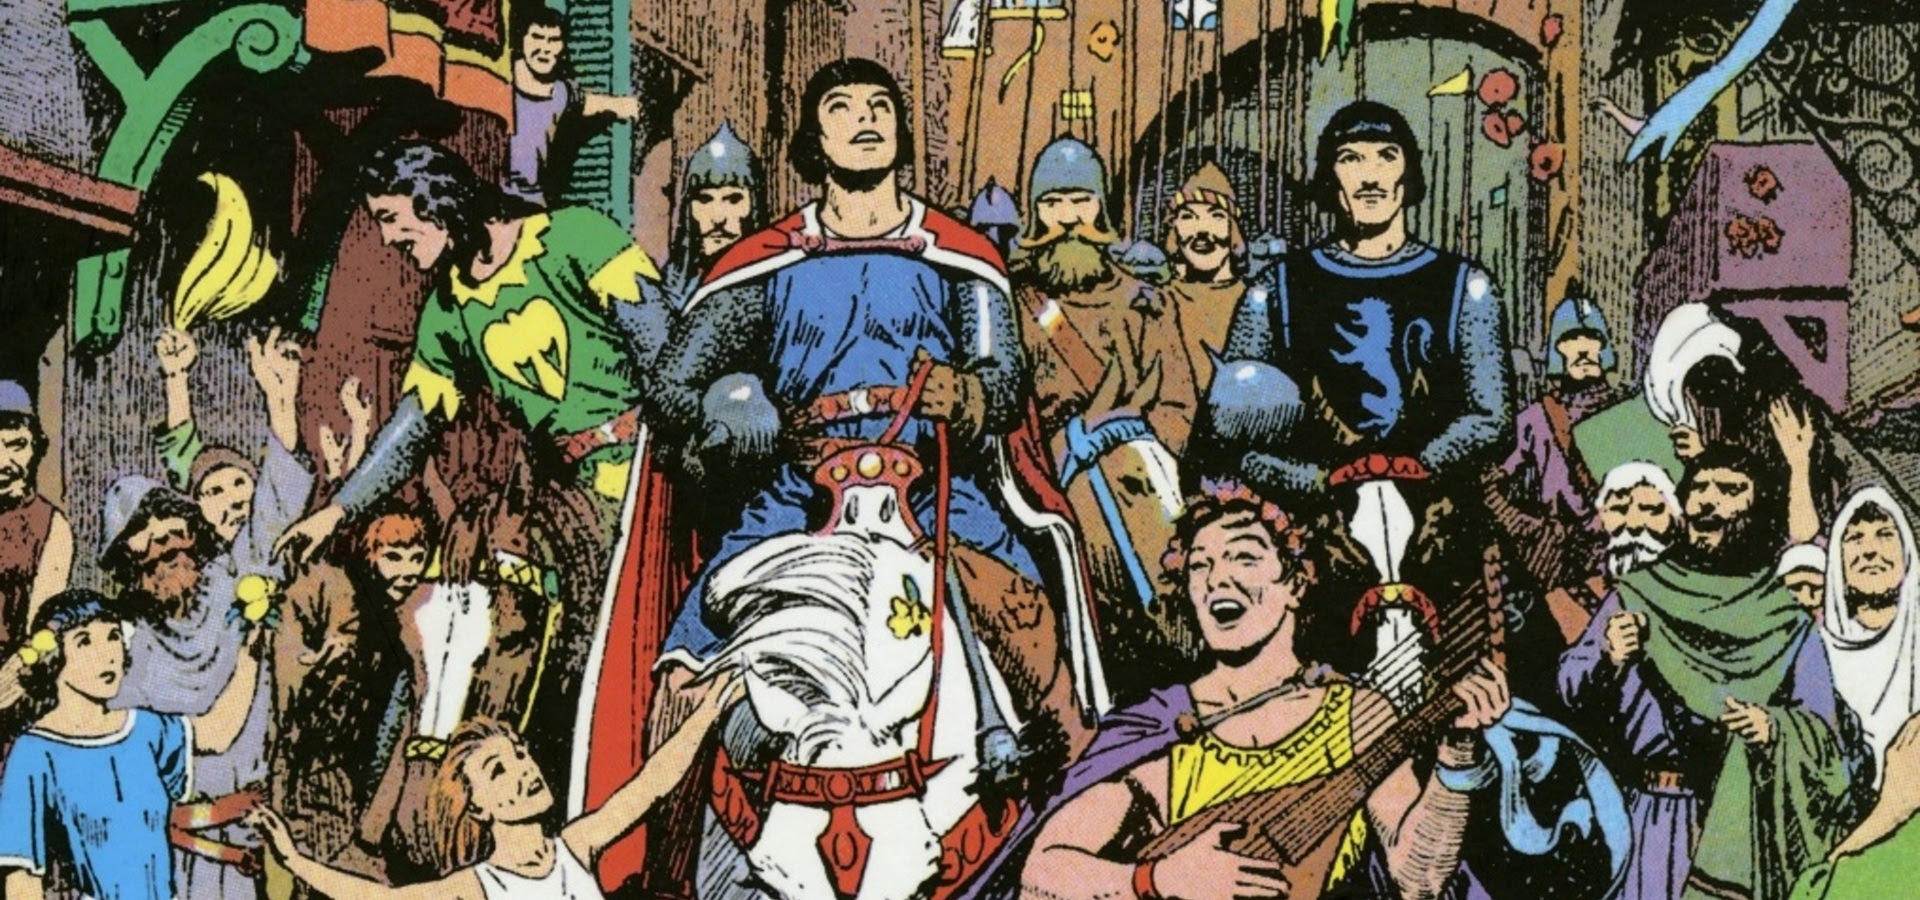 Medioevo. Storia, storie e mito a fumetti